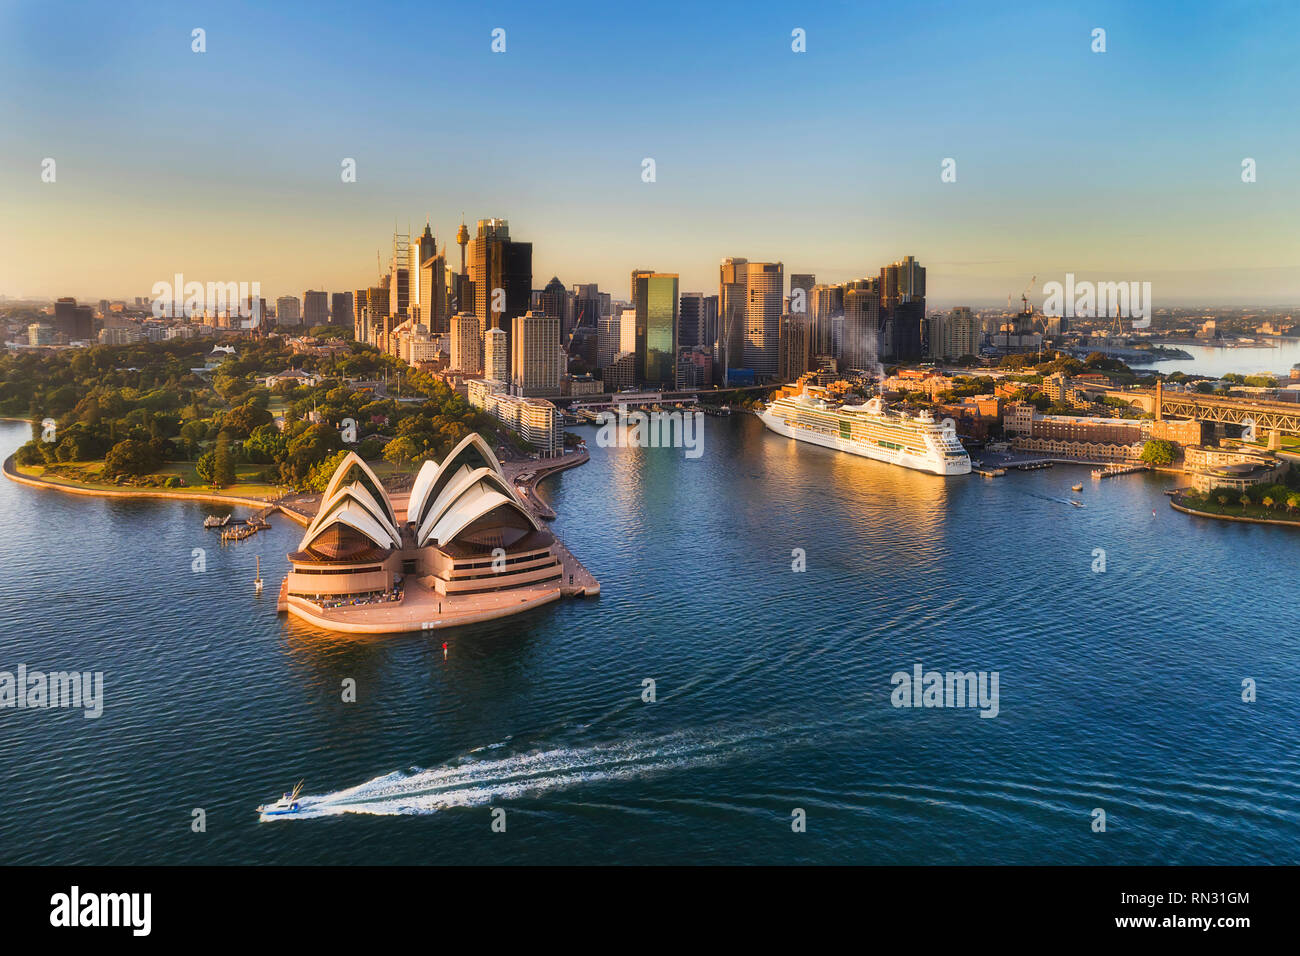 Monuments de la ville de Sydney CBD sur les rives du port de Sydney autour de Circular Quay dans de doux matin soleil vue aérienne élevée vers l'eau. Banque D'Images